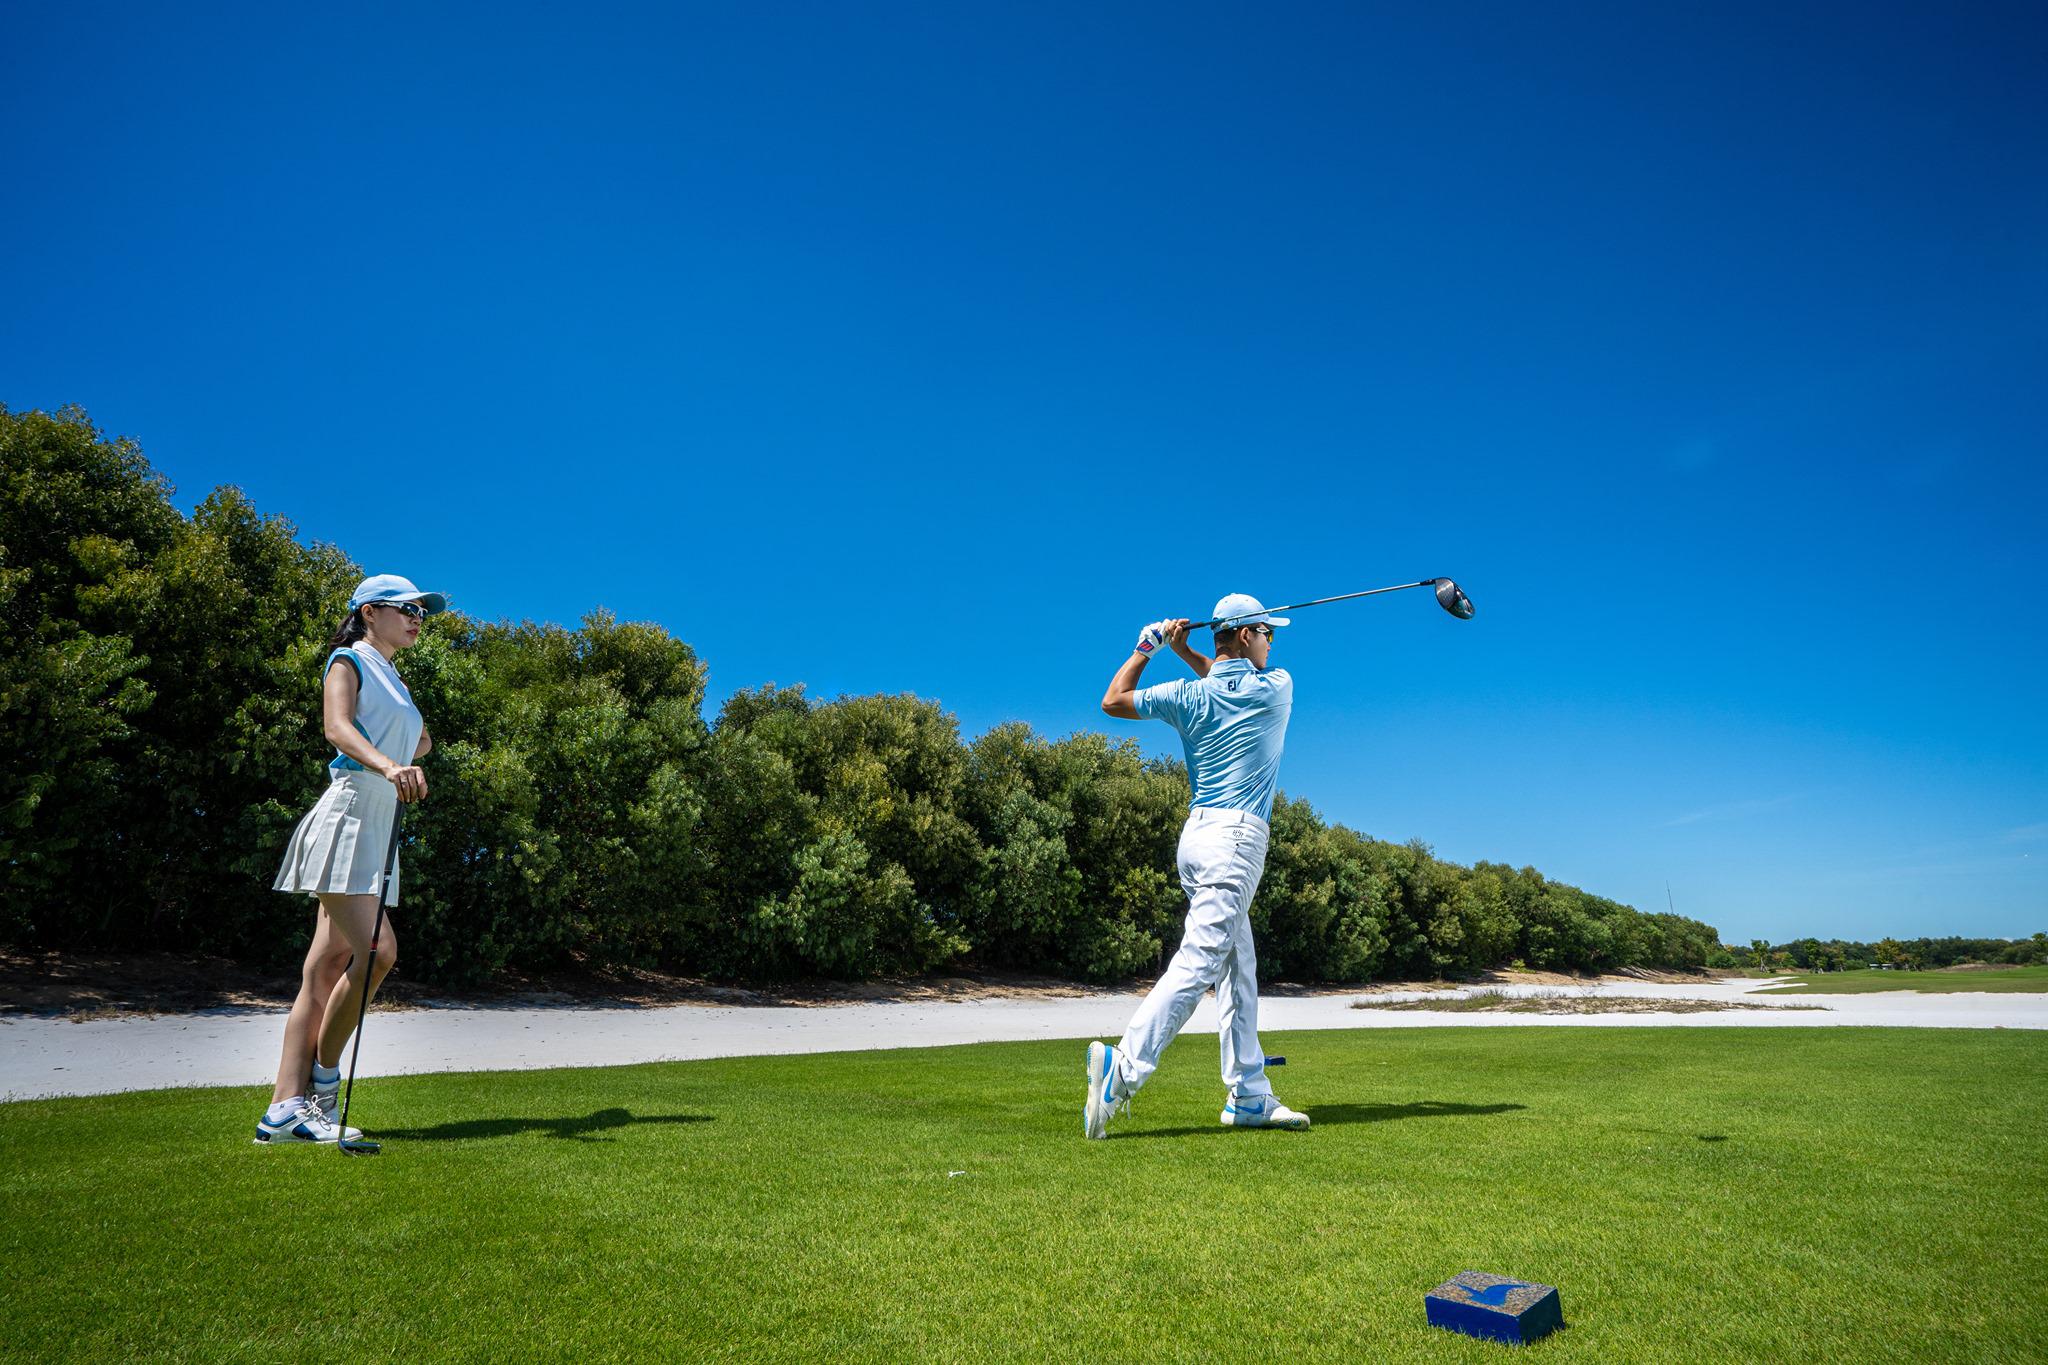 Chơi Golf thỏa thích tại Vinpearl Nam Hội An Chủ Nhật giá rẻ